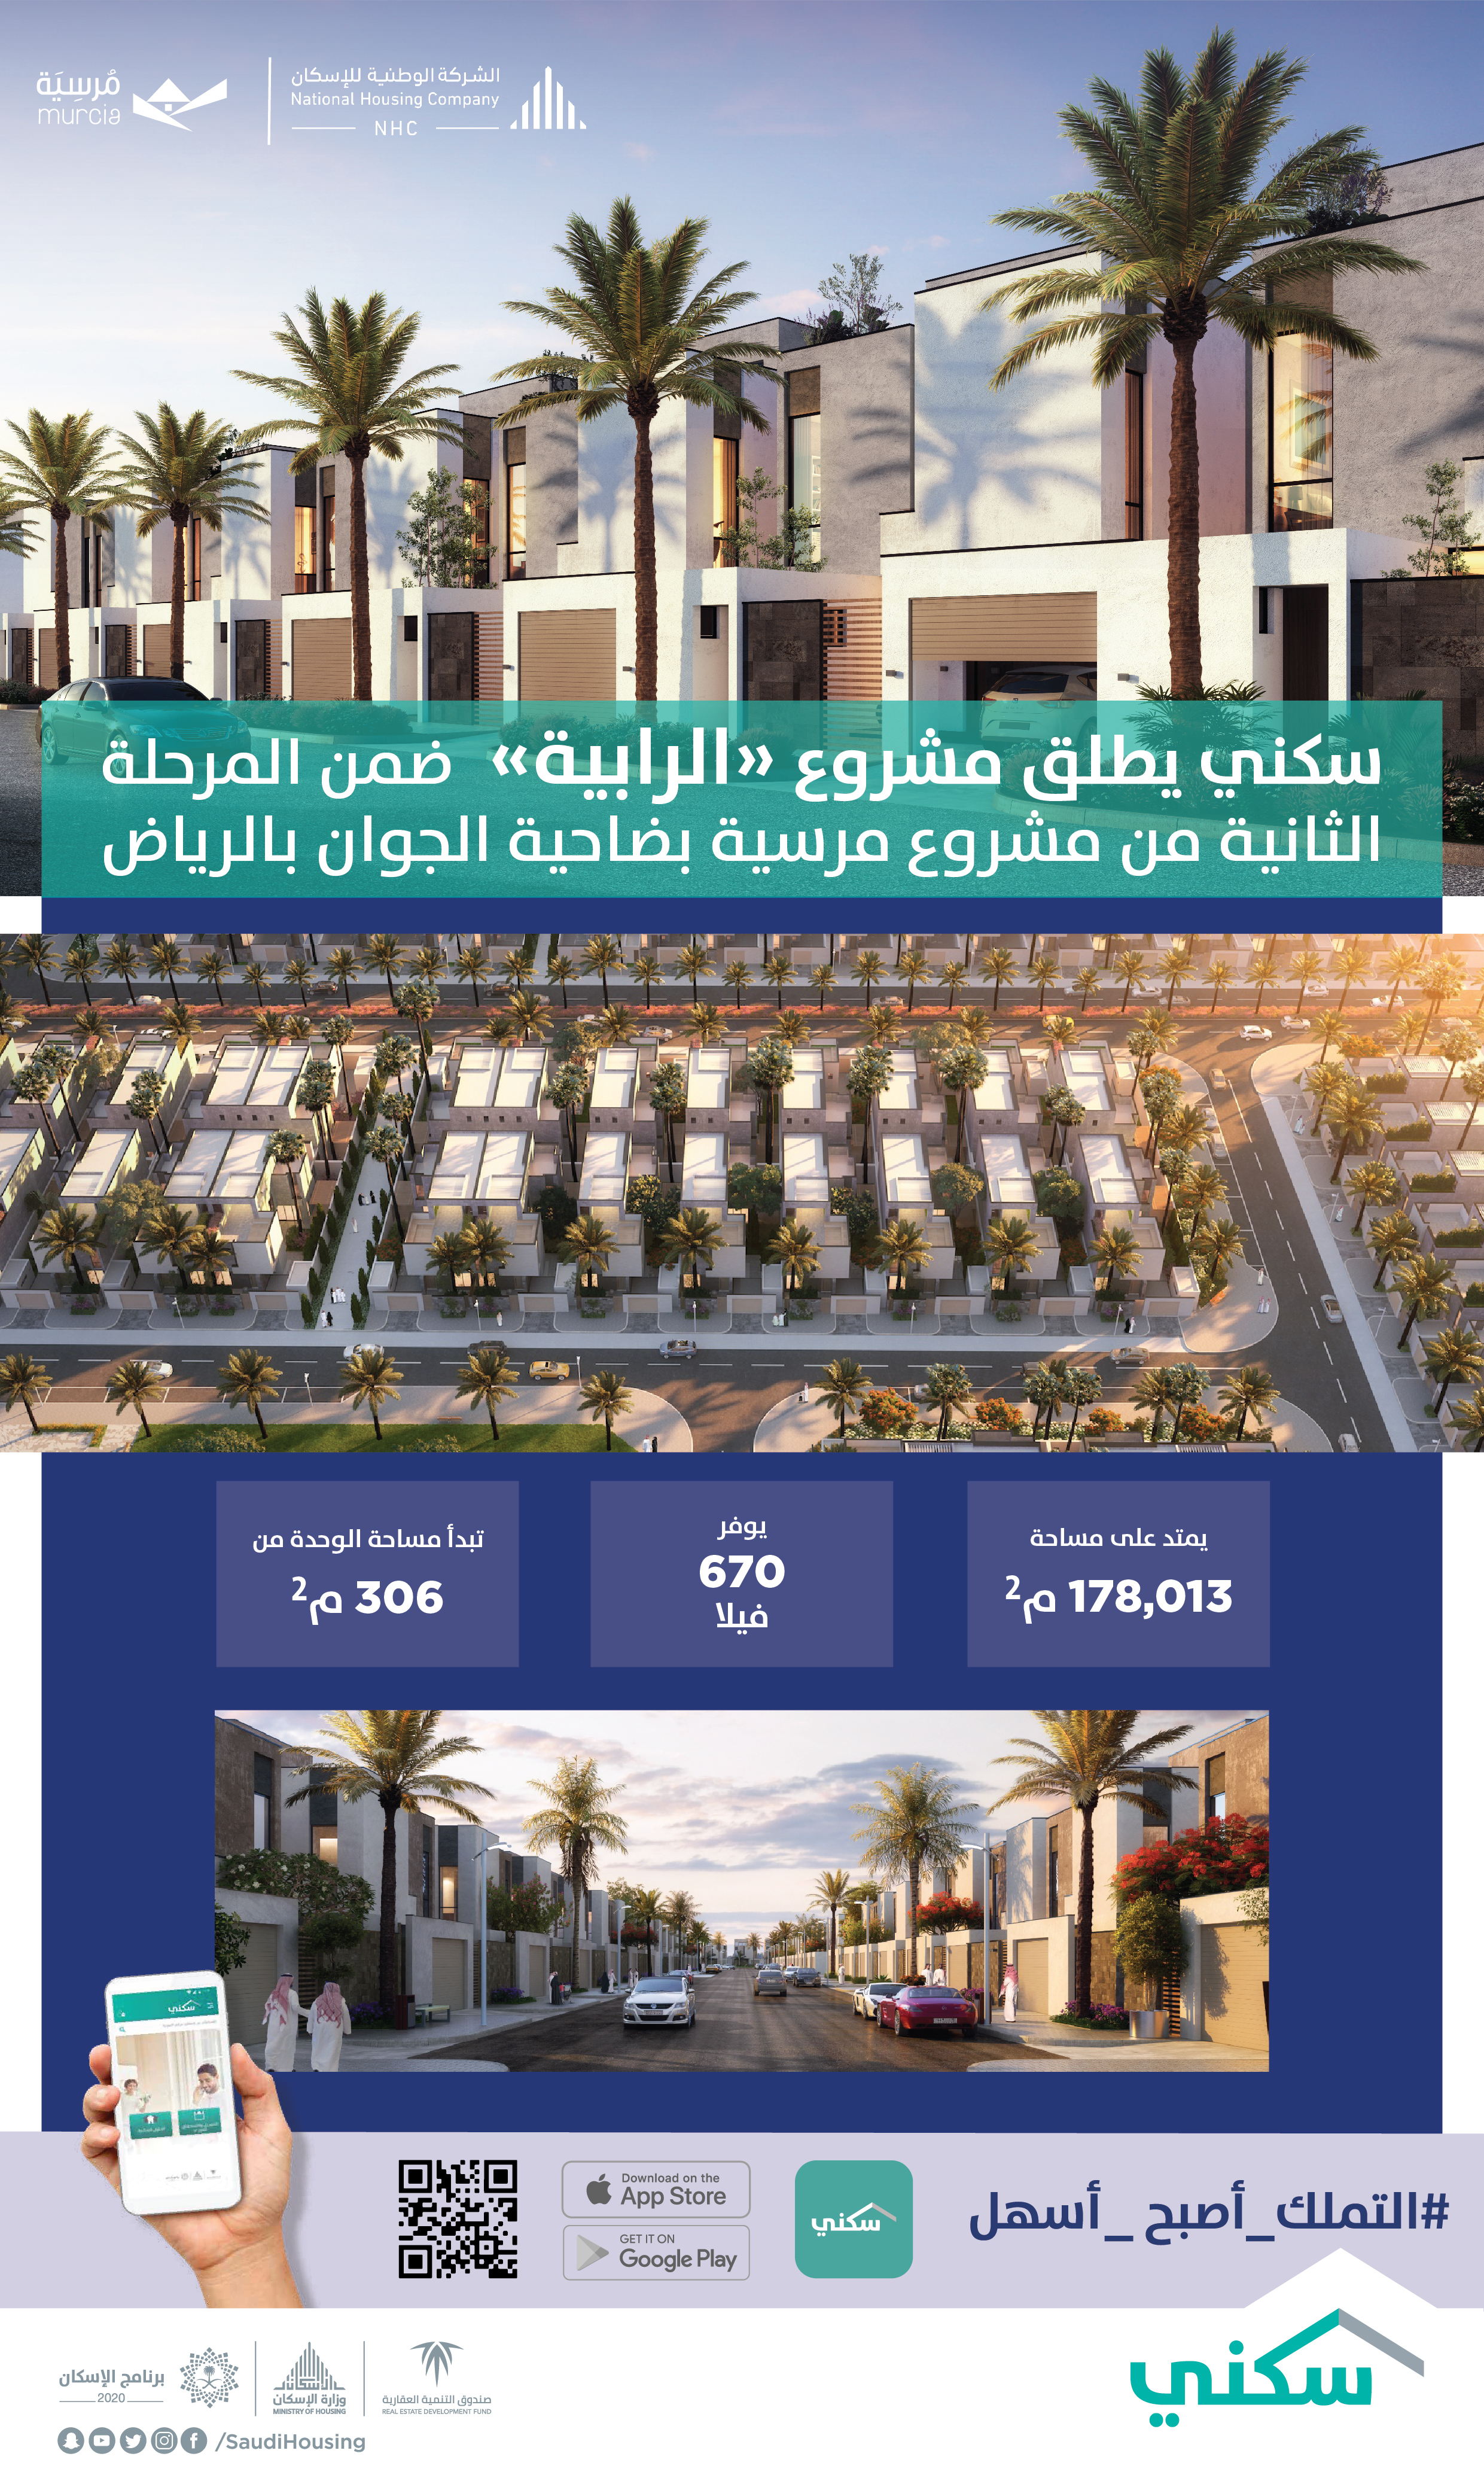 "الوطنية للإسكان" تُطلق مشروع "الرابية" السكني بعدد 670 فيلا شمال الرياض